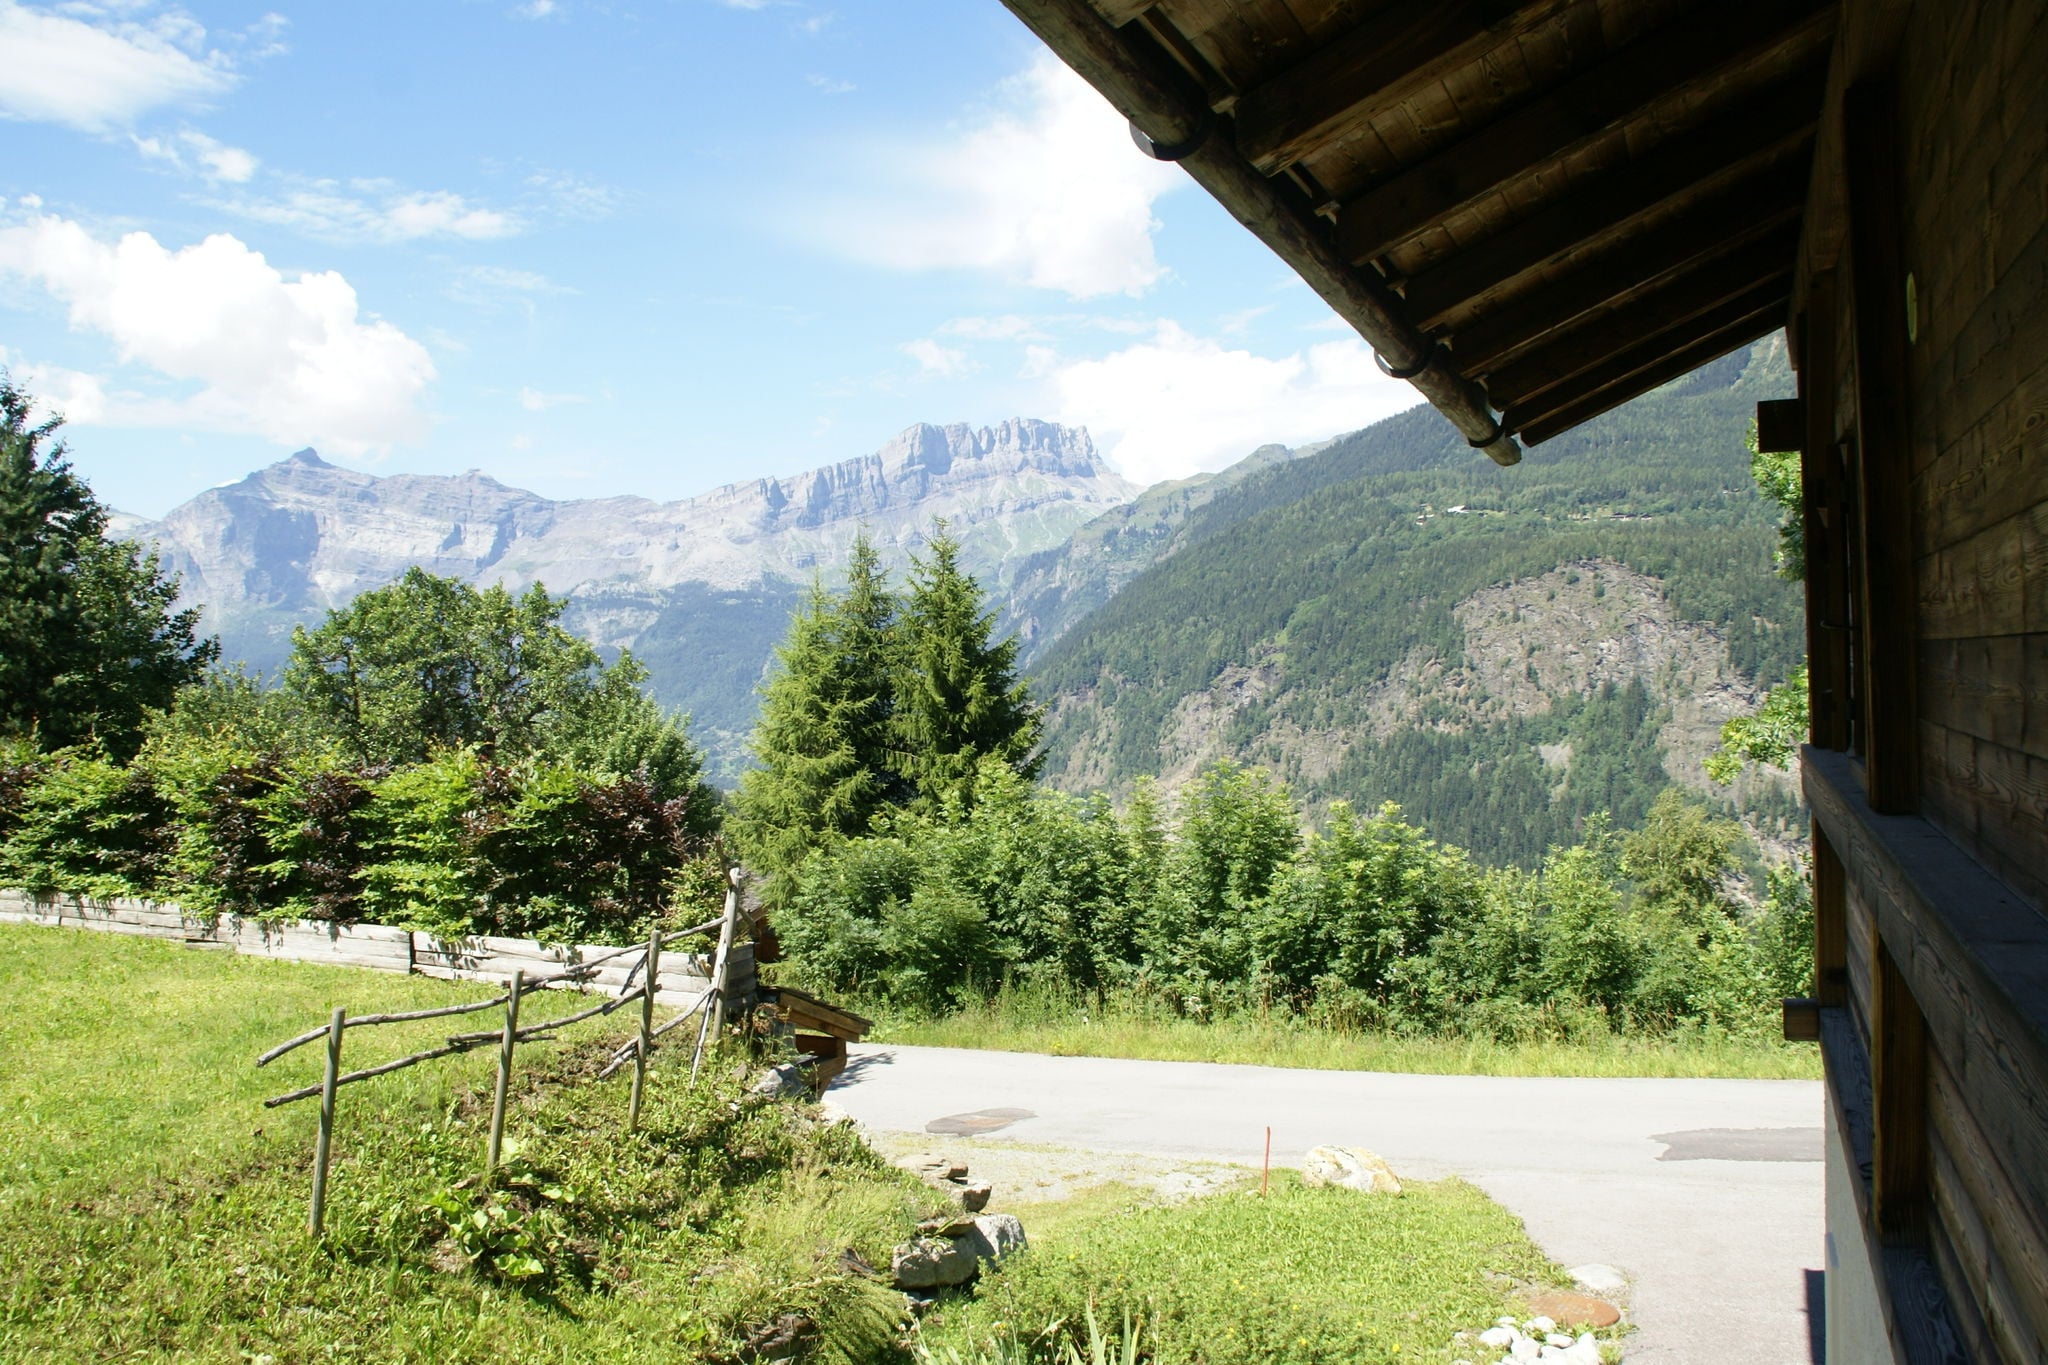 Vredig chalet in de Rhone, Alpen, in de Chamonix vallei